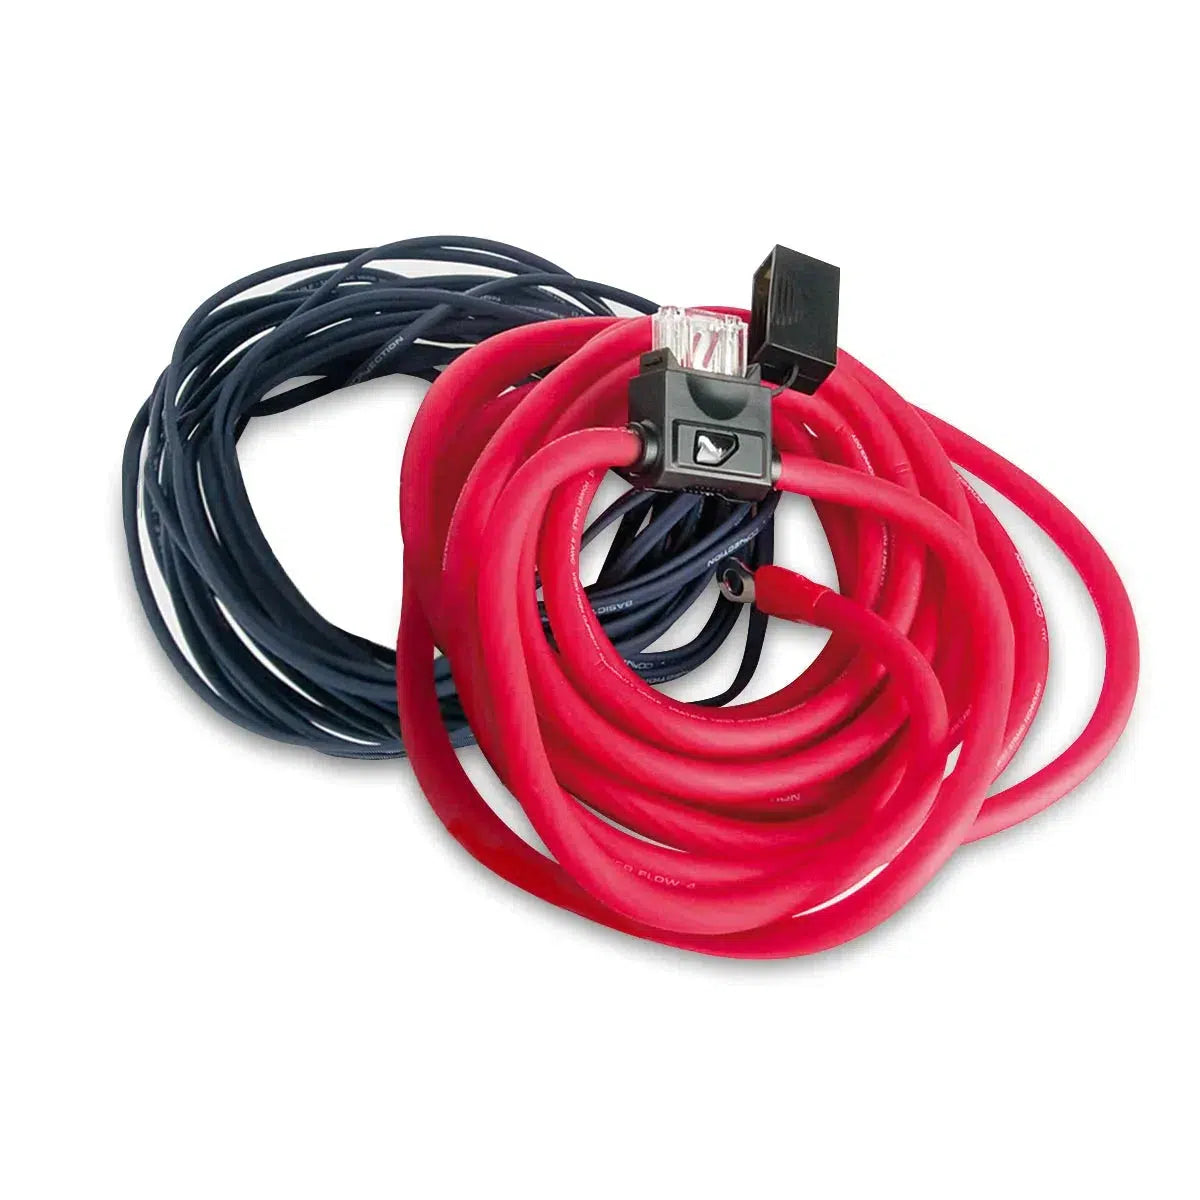 Cable de alimentación Audison Connection-First FPK 350.1-10mm²-Masori.de